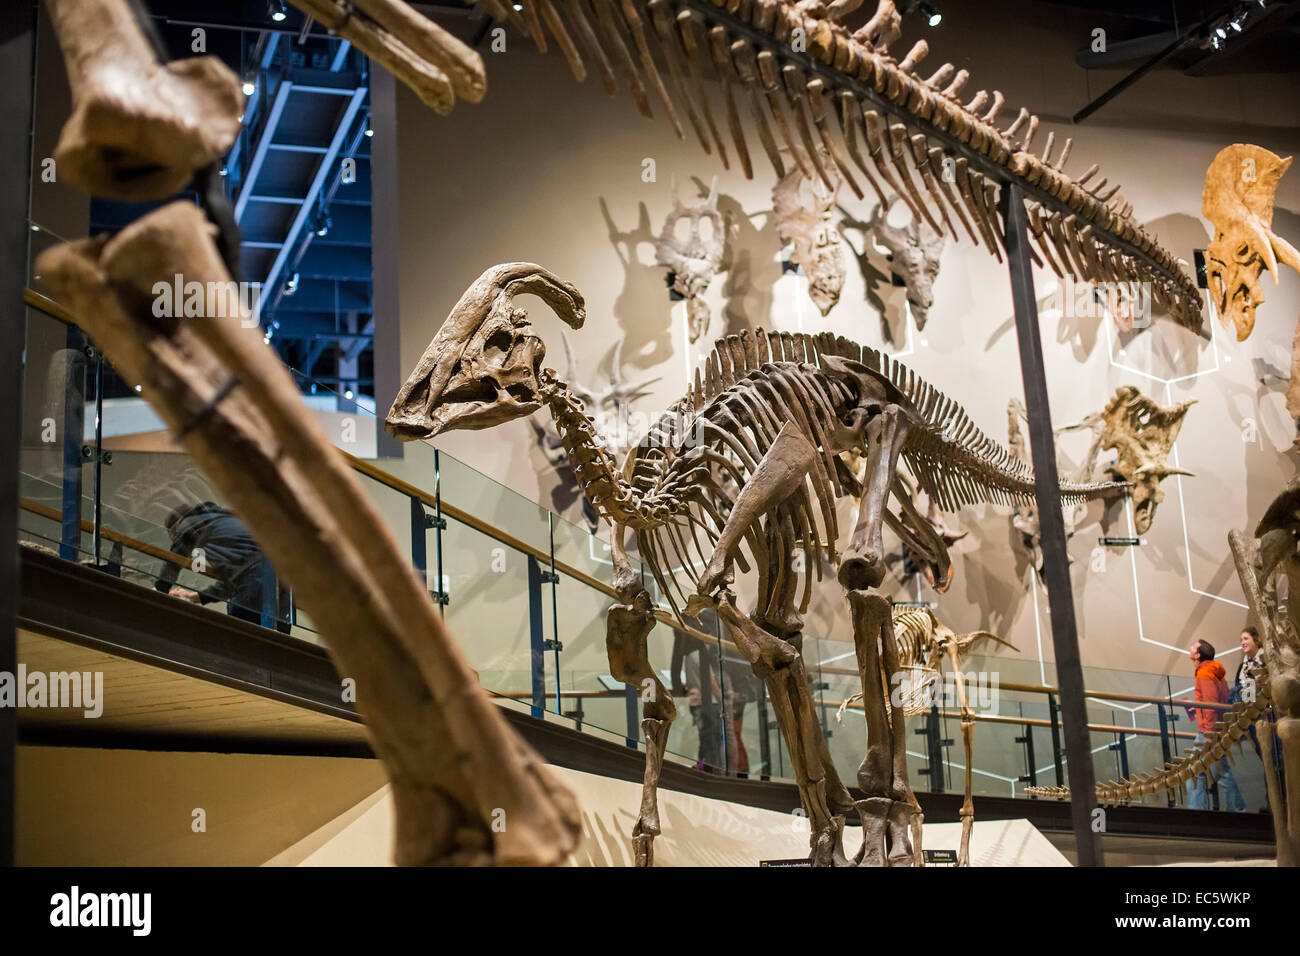 Salt Lake City, Utah - The Natural History Museum of Utah at the ...